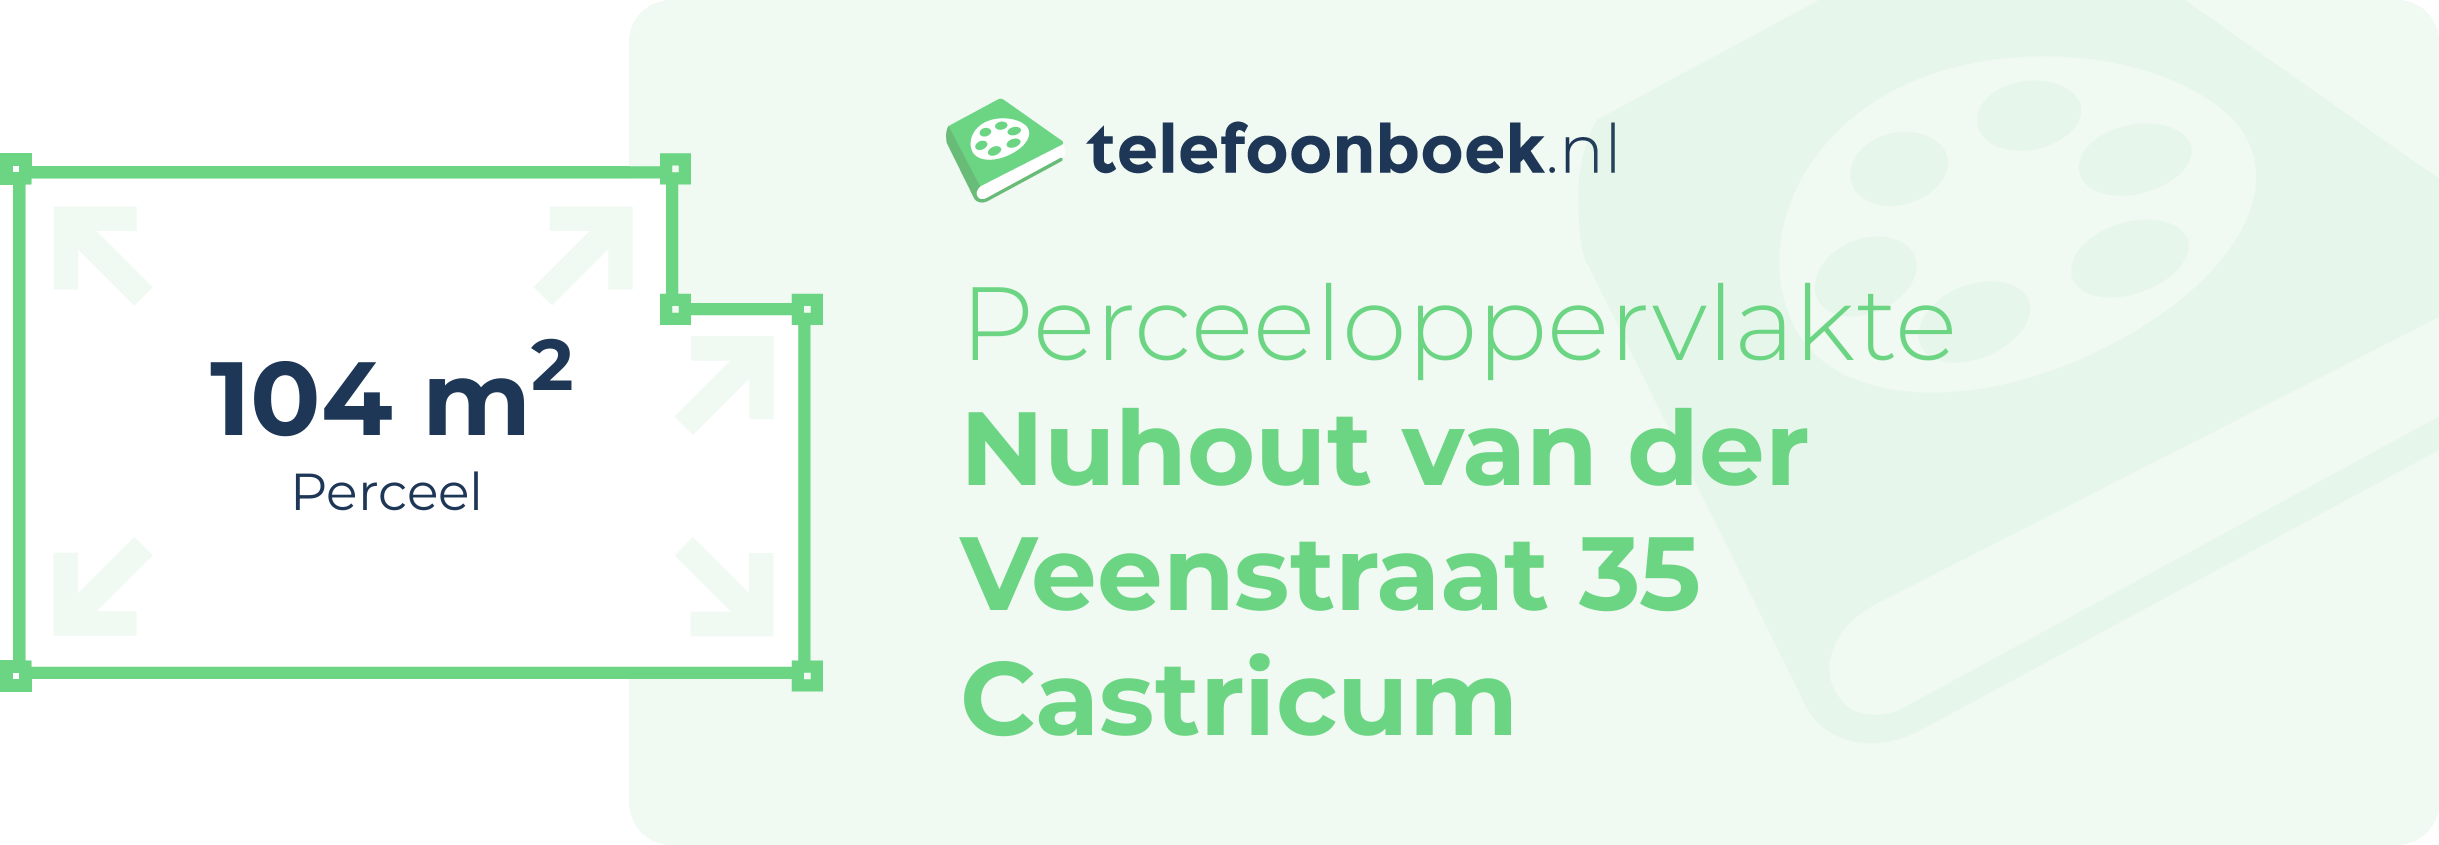 Perceeloppervlakte Nuhout Van Der Veenstraat 35 Castricum